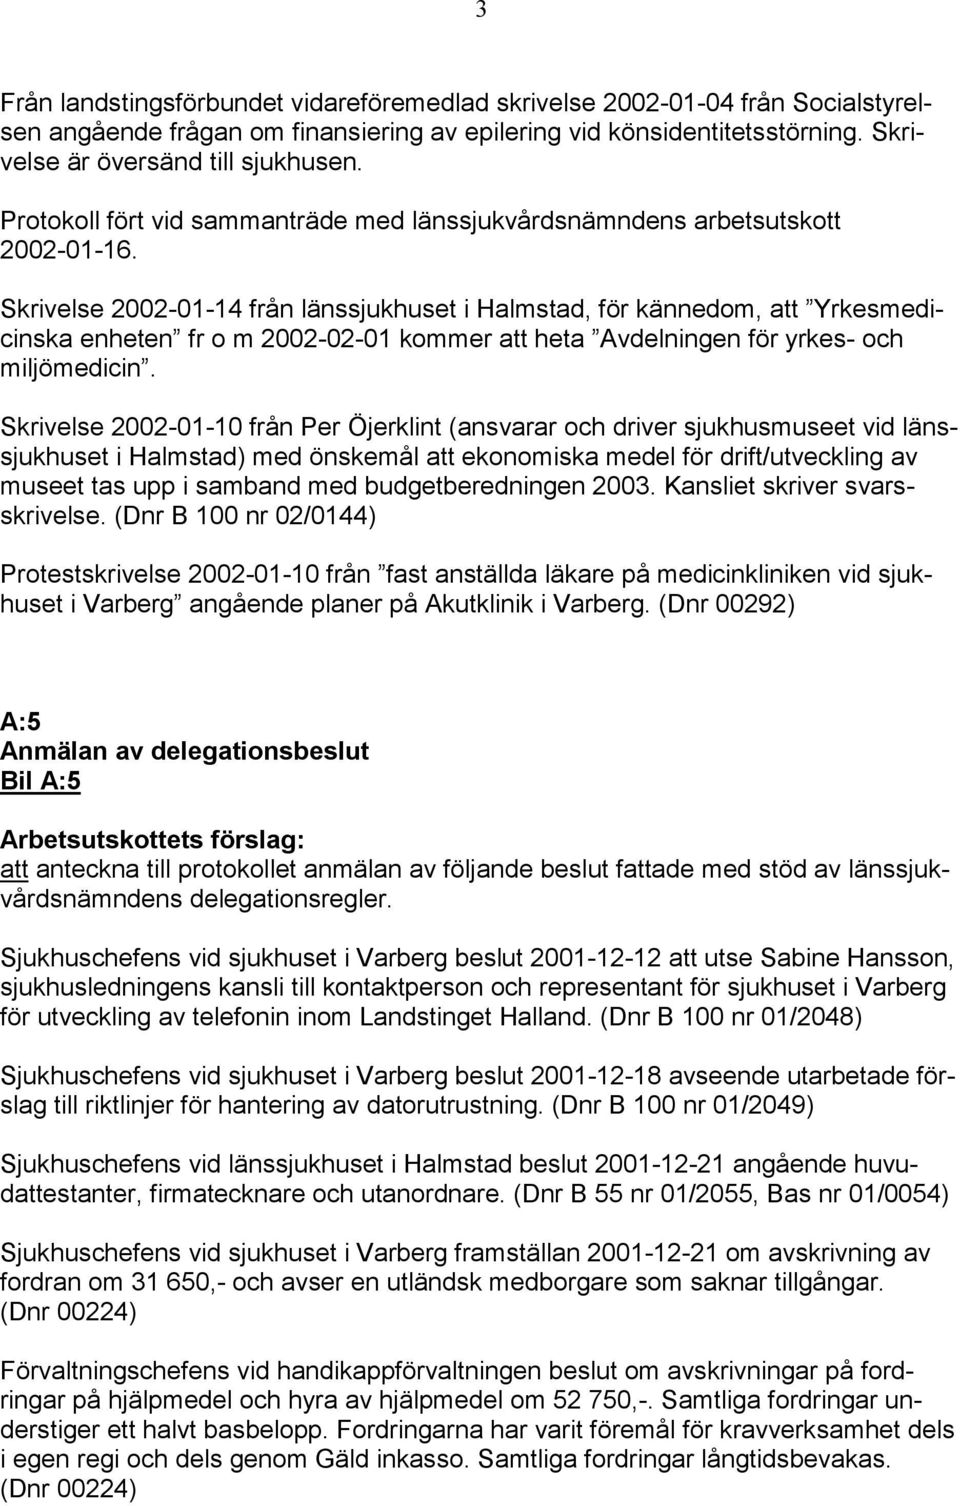 Skrivelse 2002-01-14 från länssjukhuset i Halmstad, för kännedom, att Yrkesmedicinska enheten fr o m 2002-02-01 kommer att heta Avdelningen för yrkes- och miljömedicin.